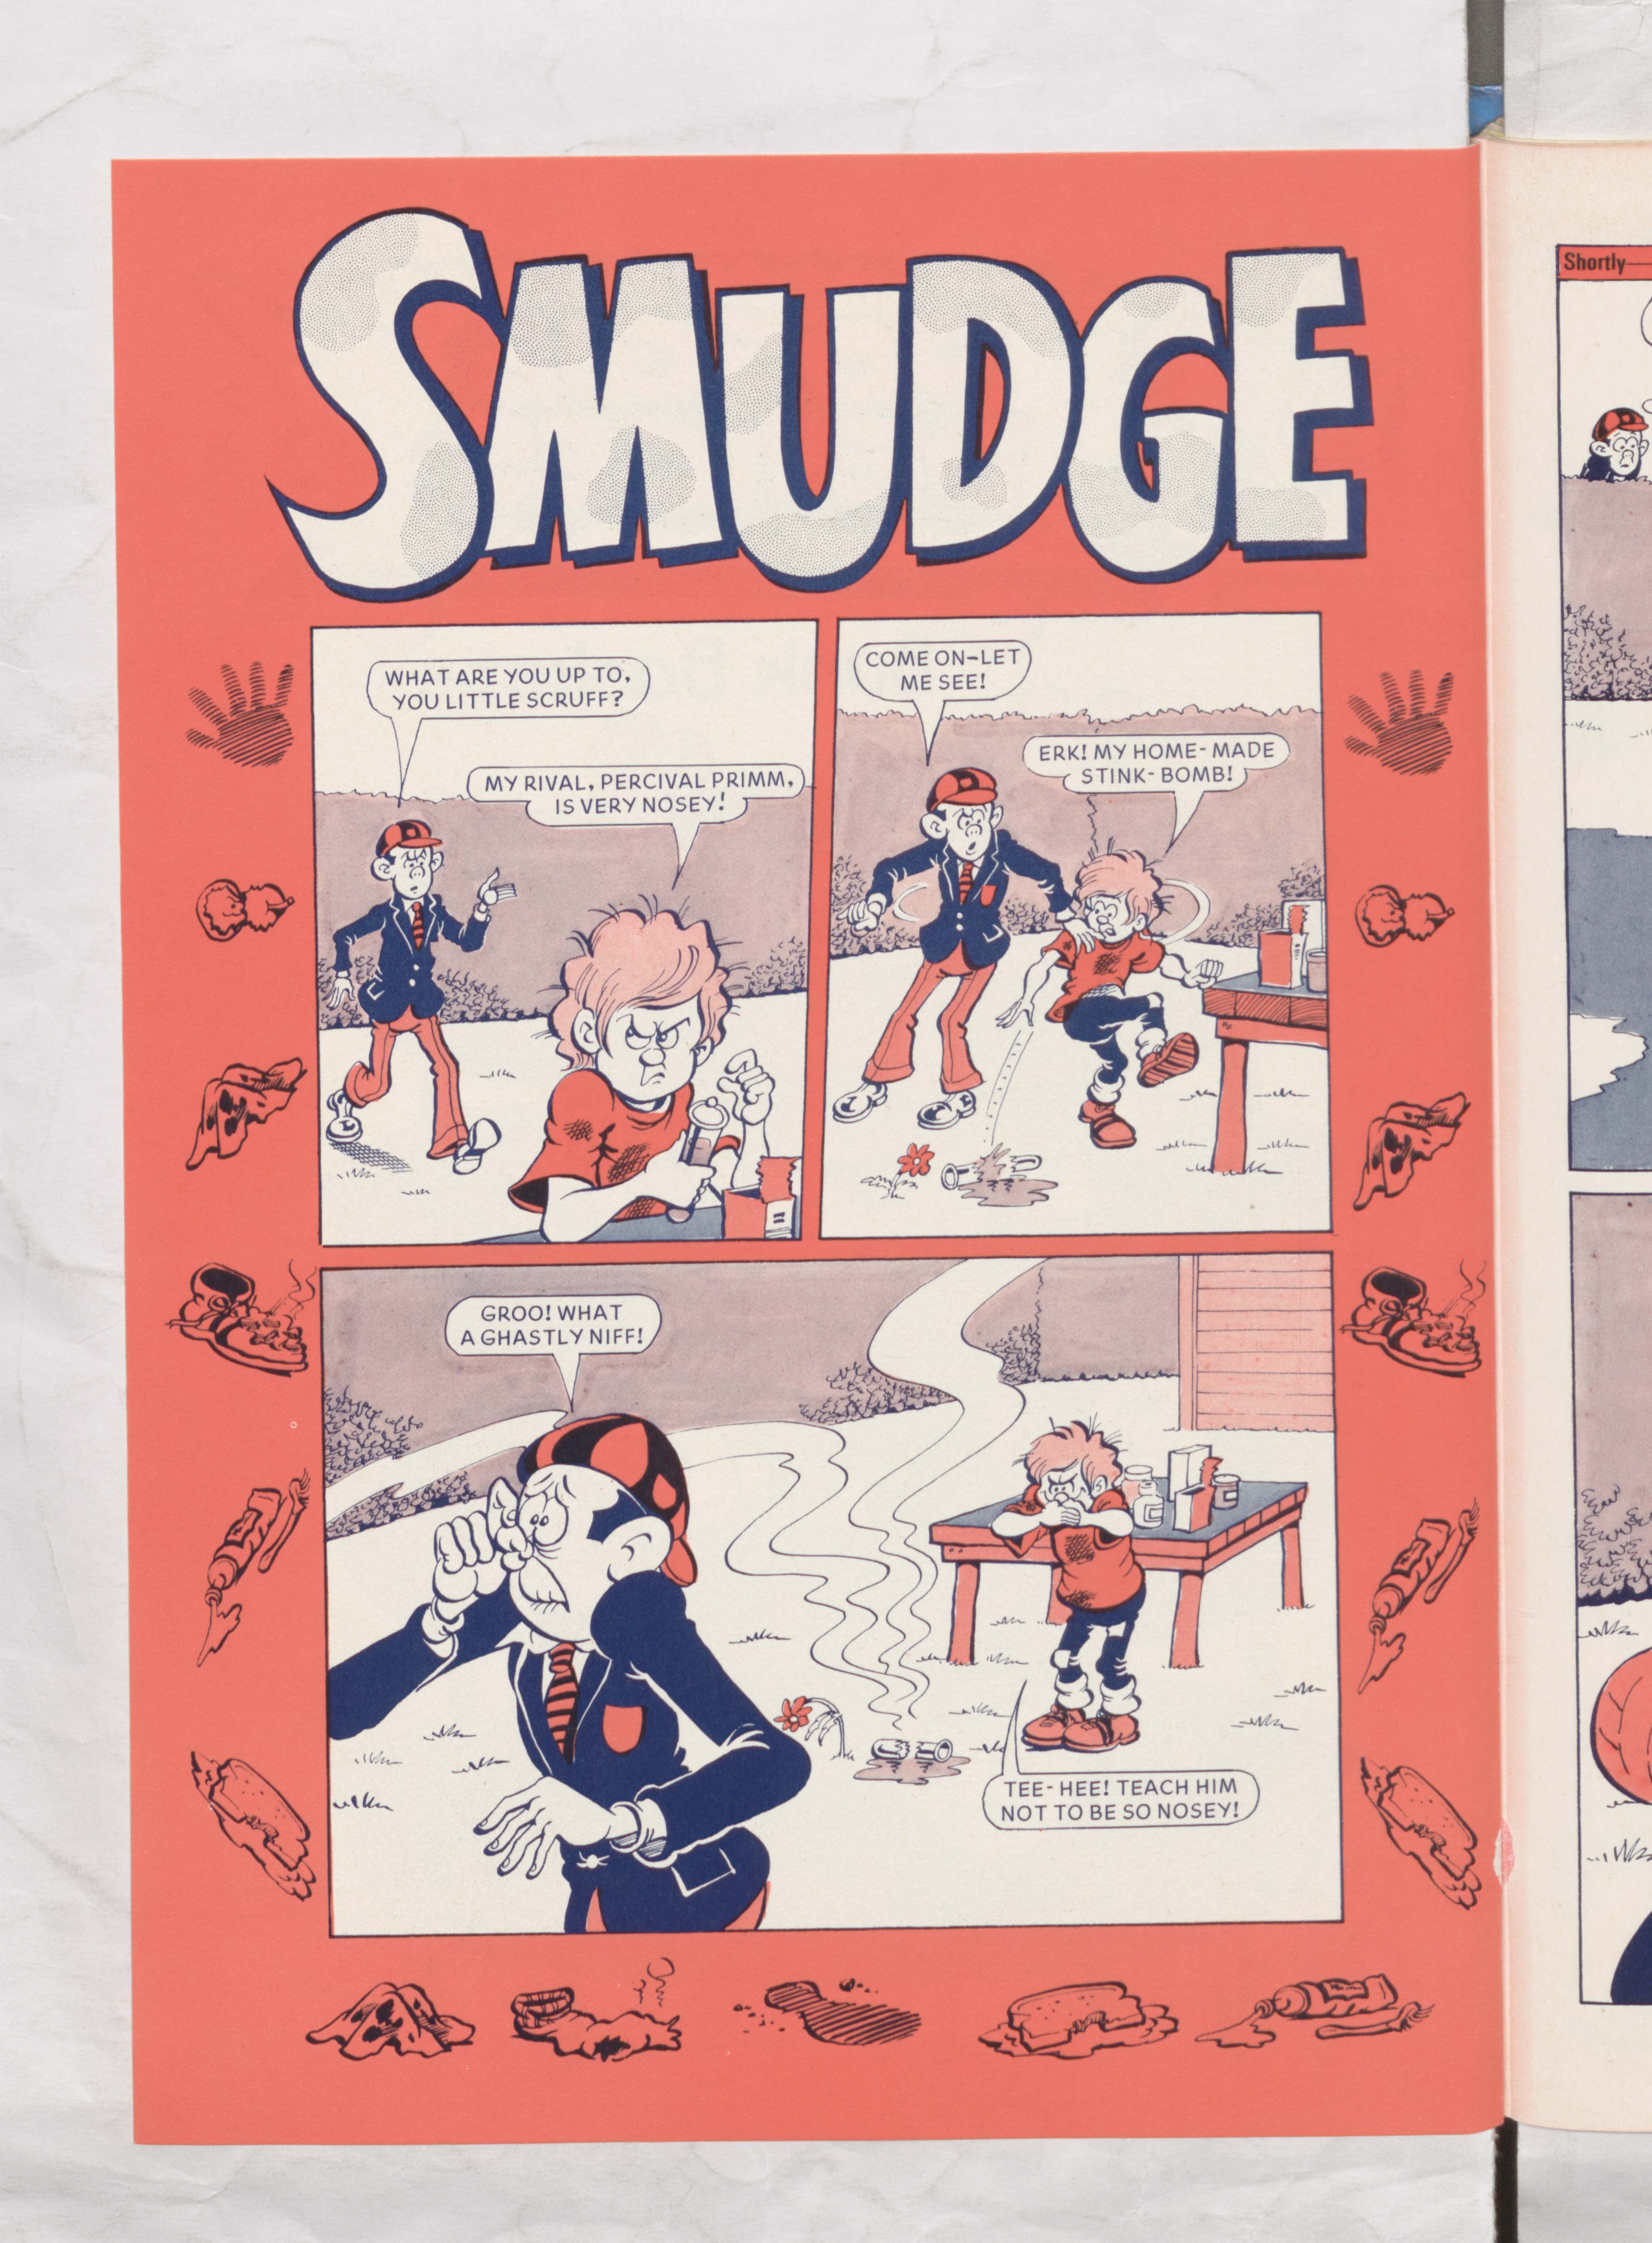 Smudge, the little scruff - Beano Book 1982 Annual